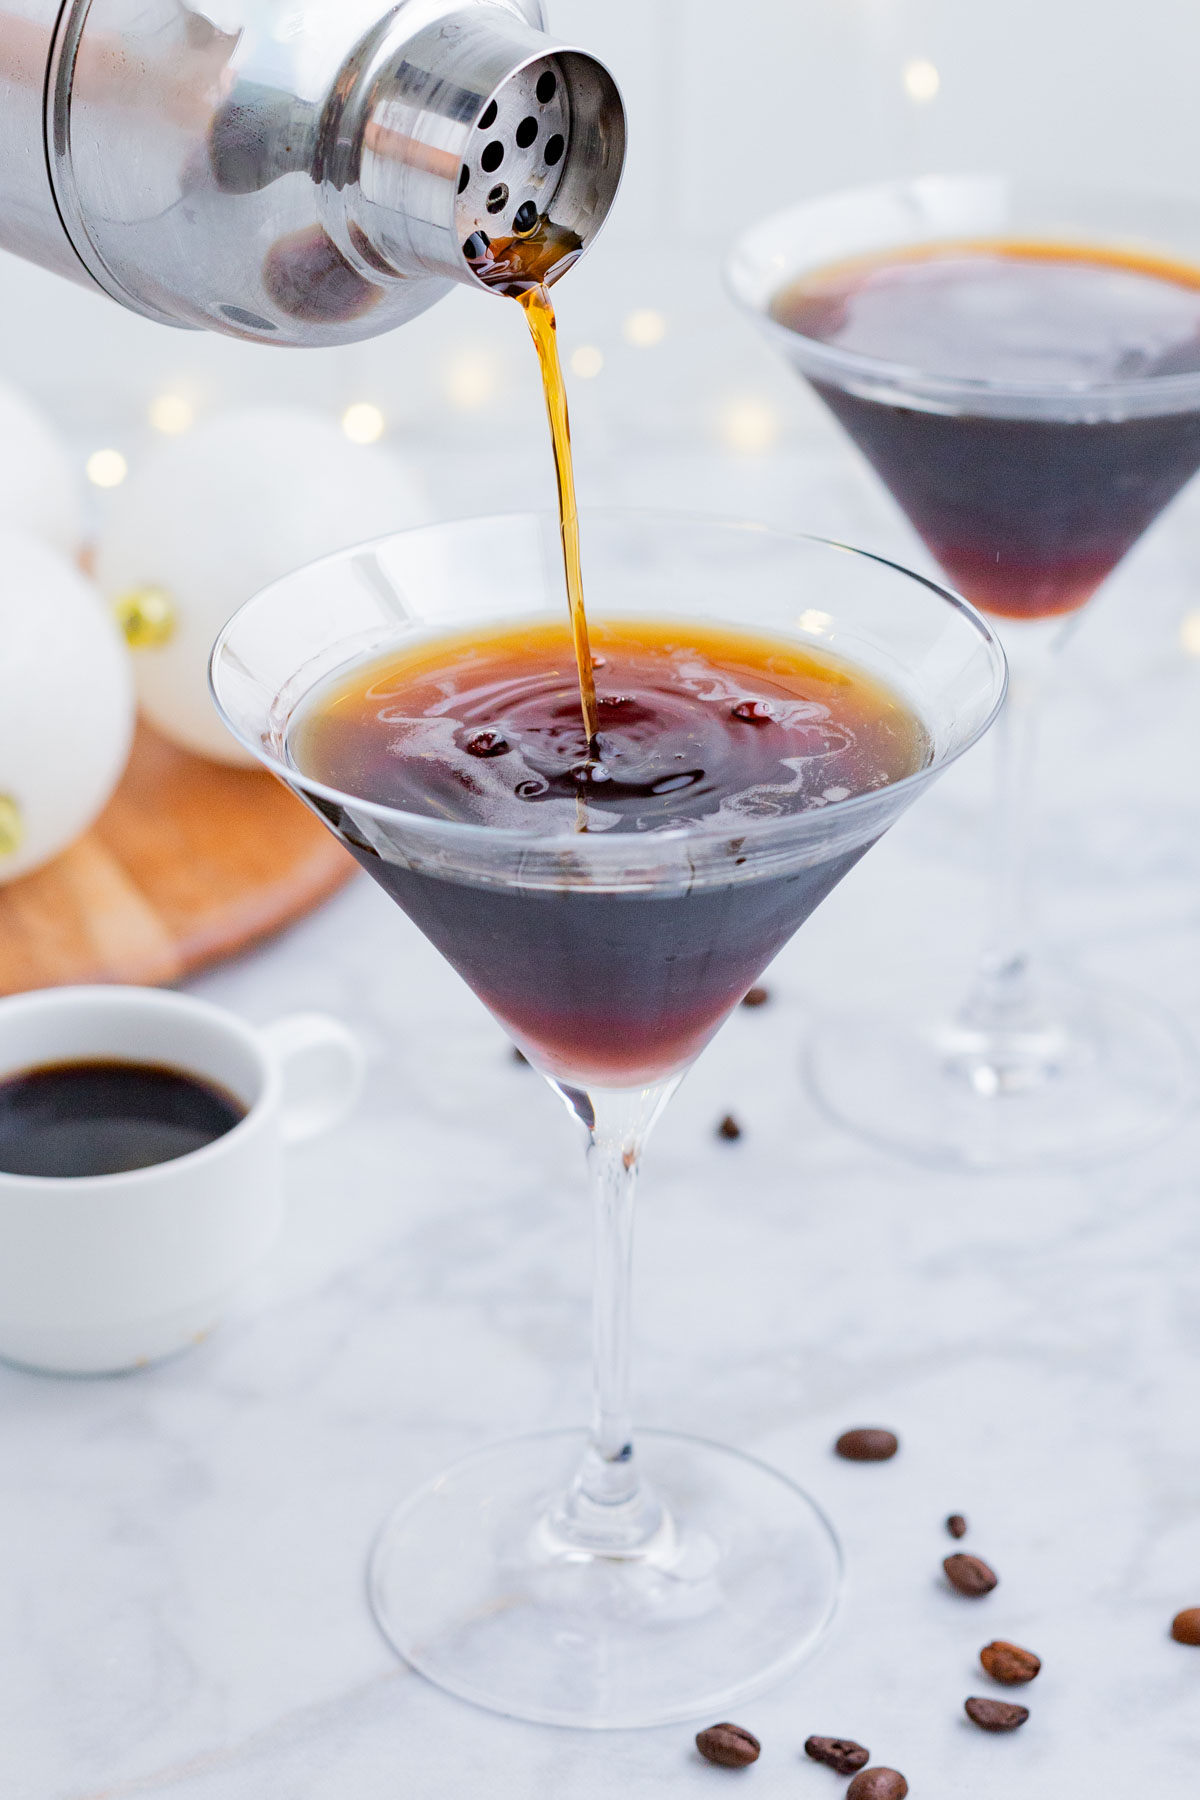 A shaken espresso martini is poured into a martini glass.